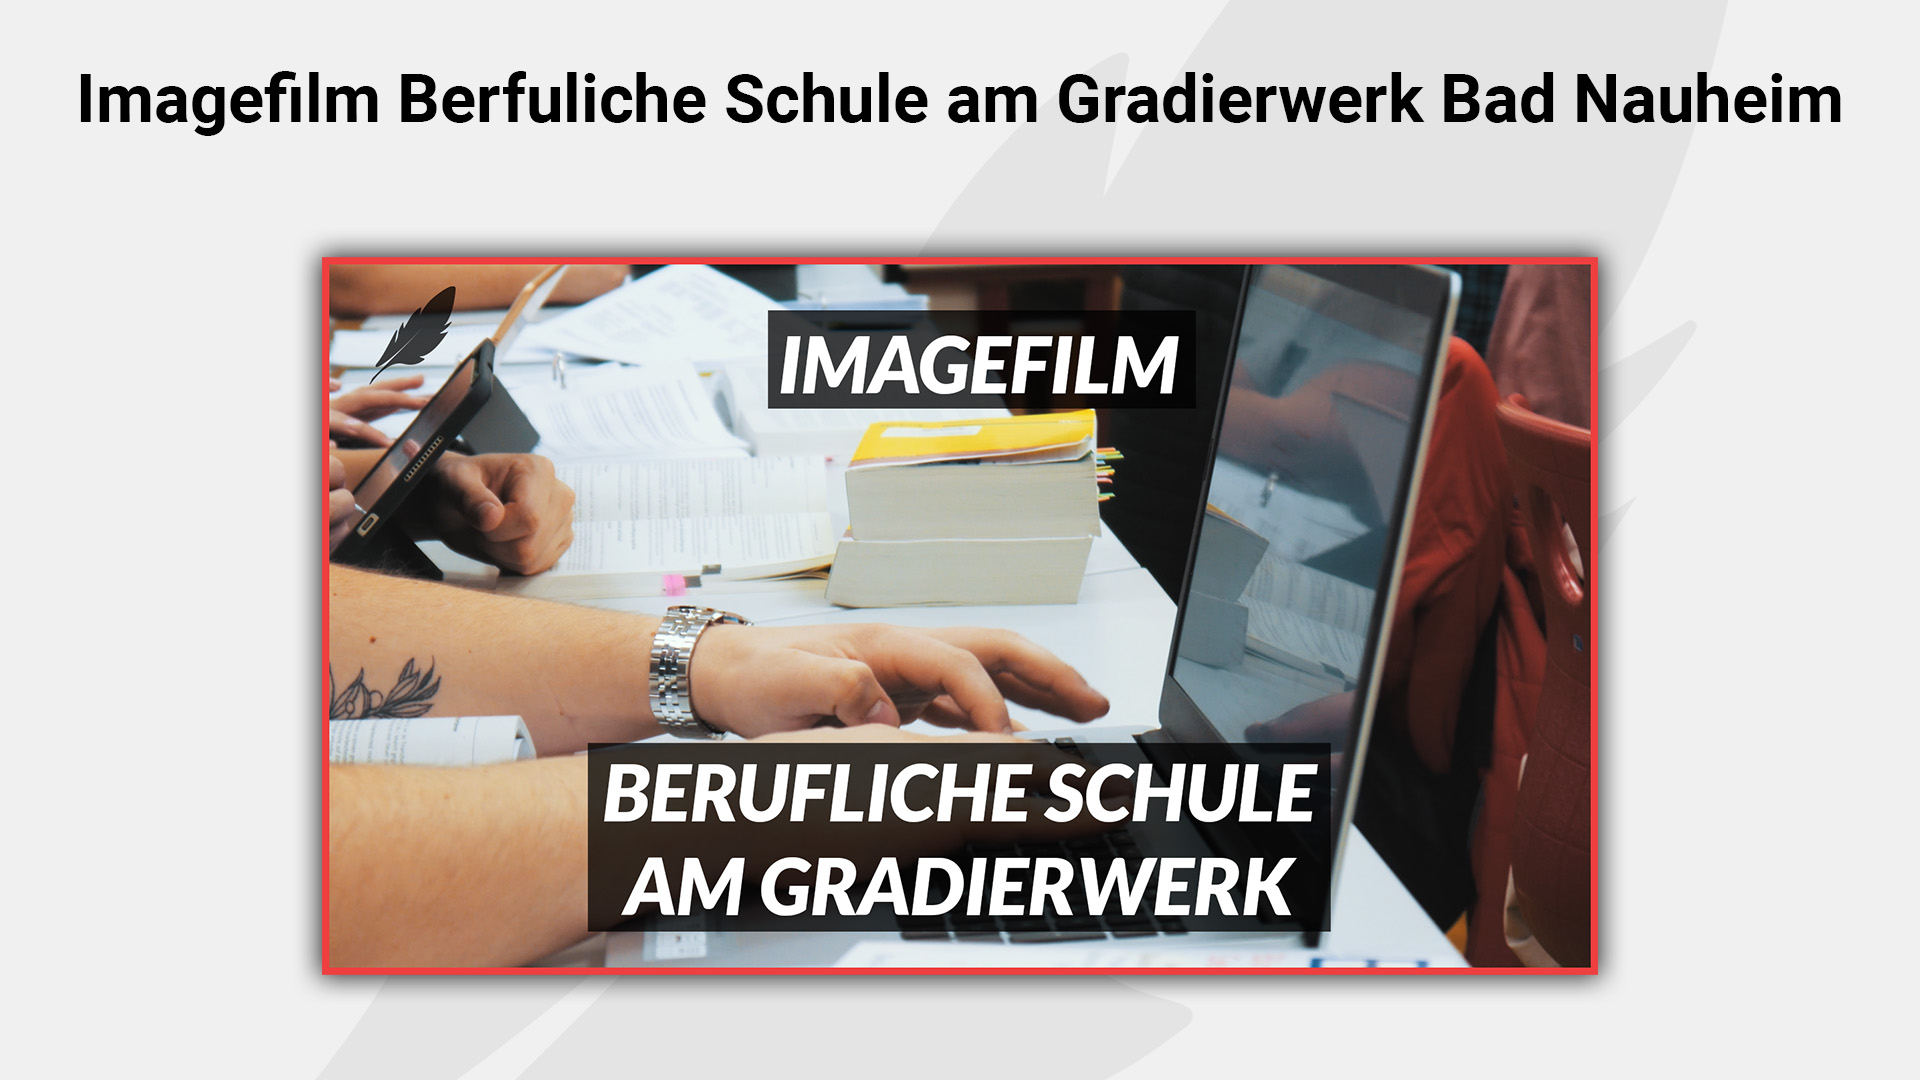 Mehr über den Artikel erfahren Imagefilm – Berufsschule am Gradierwerk Bad Nauheim